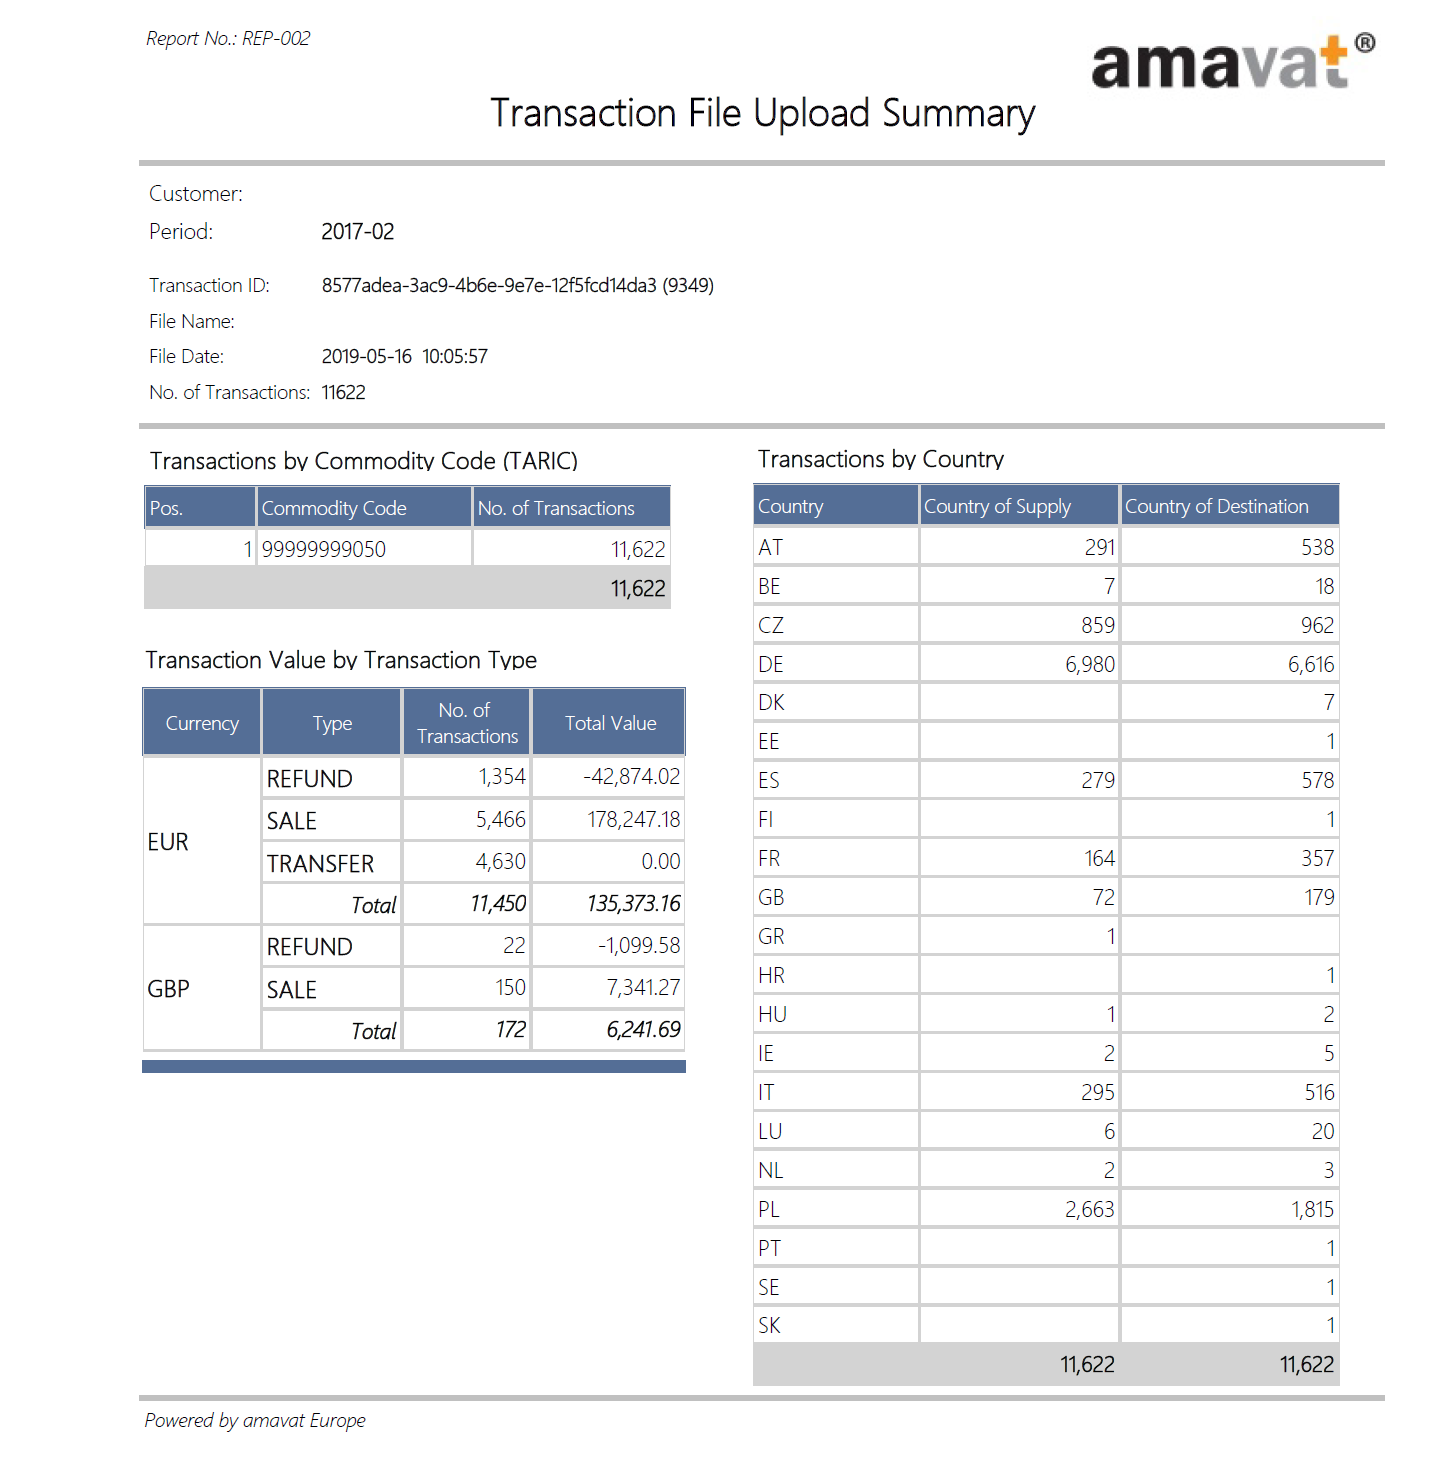 Transaction File Upload Summary